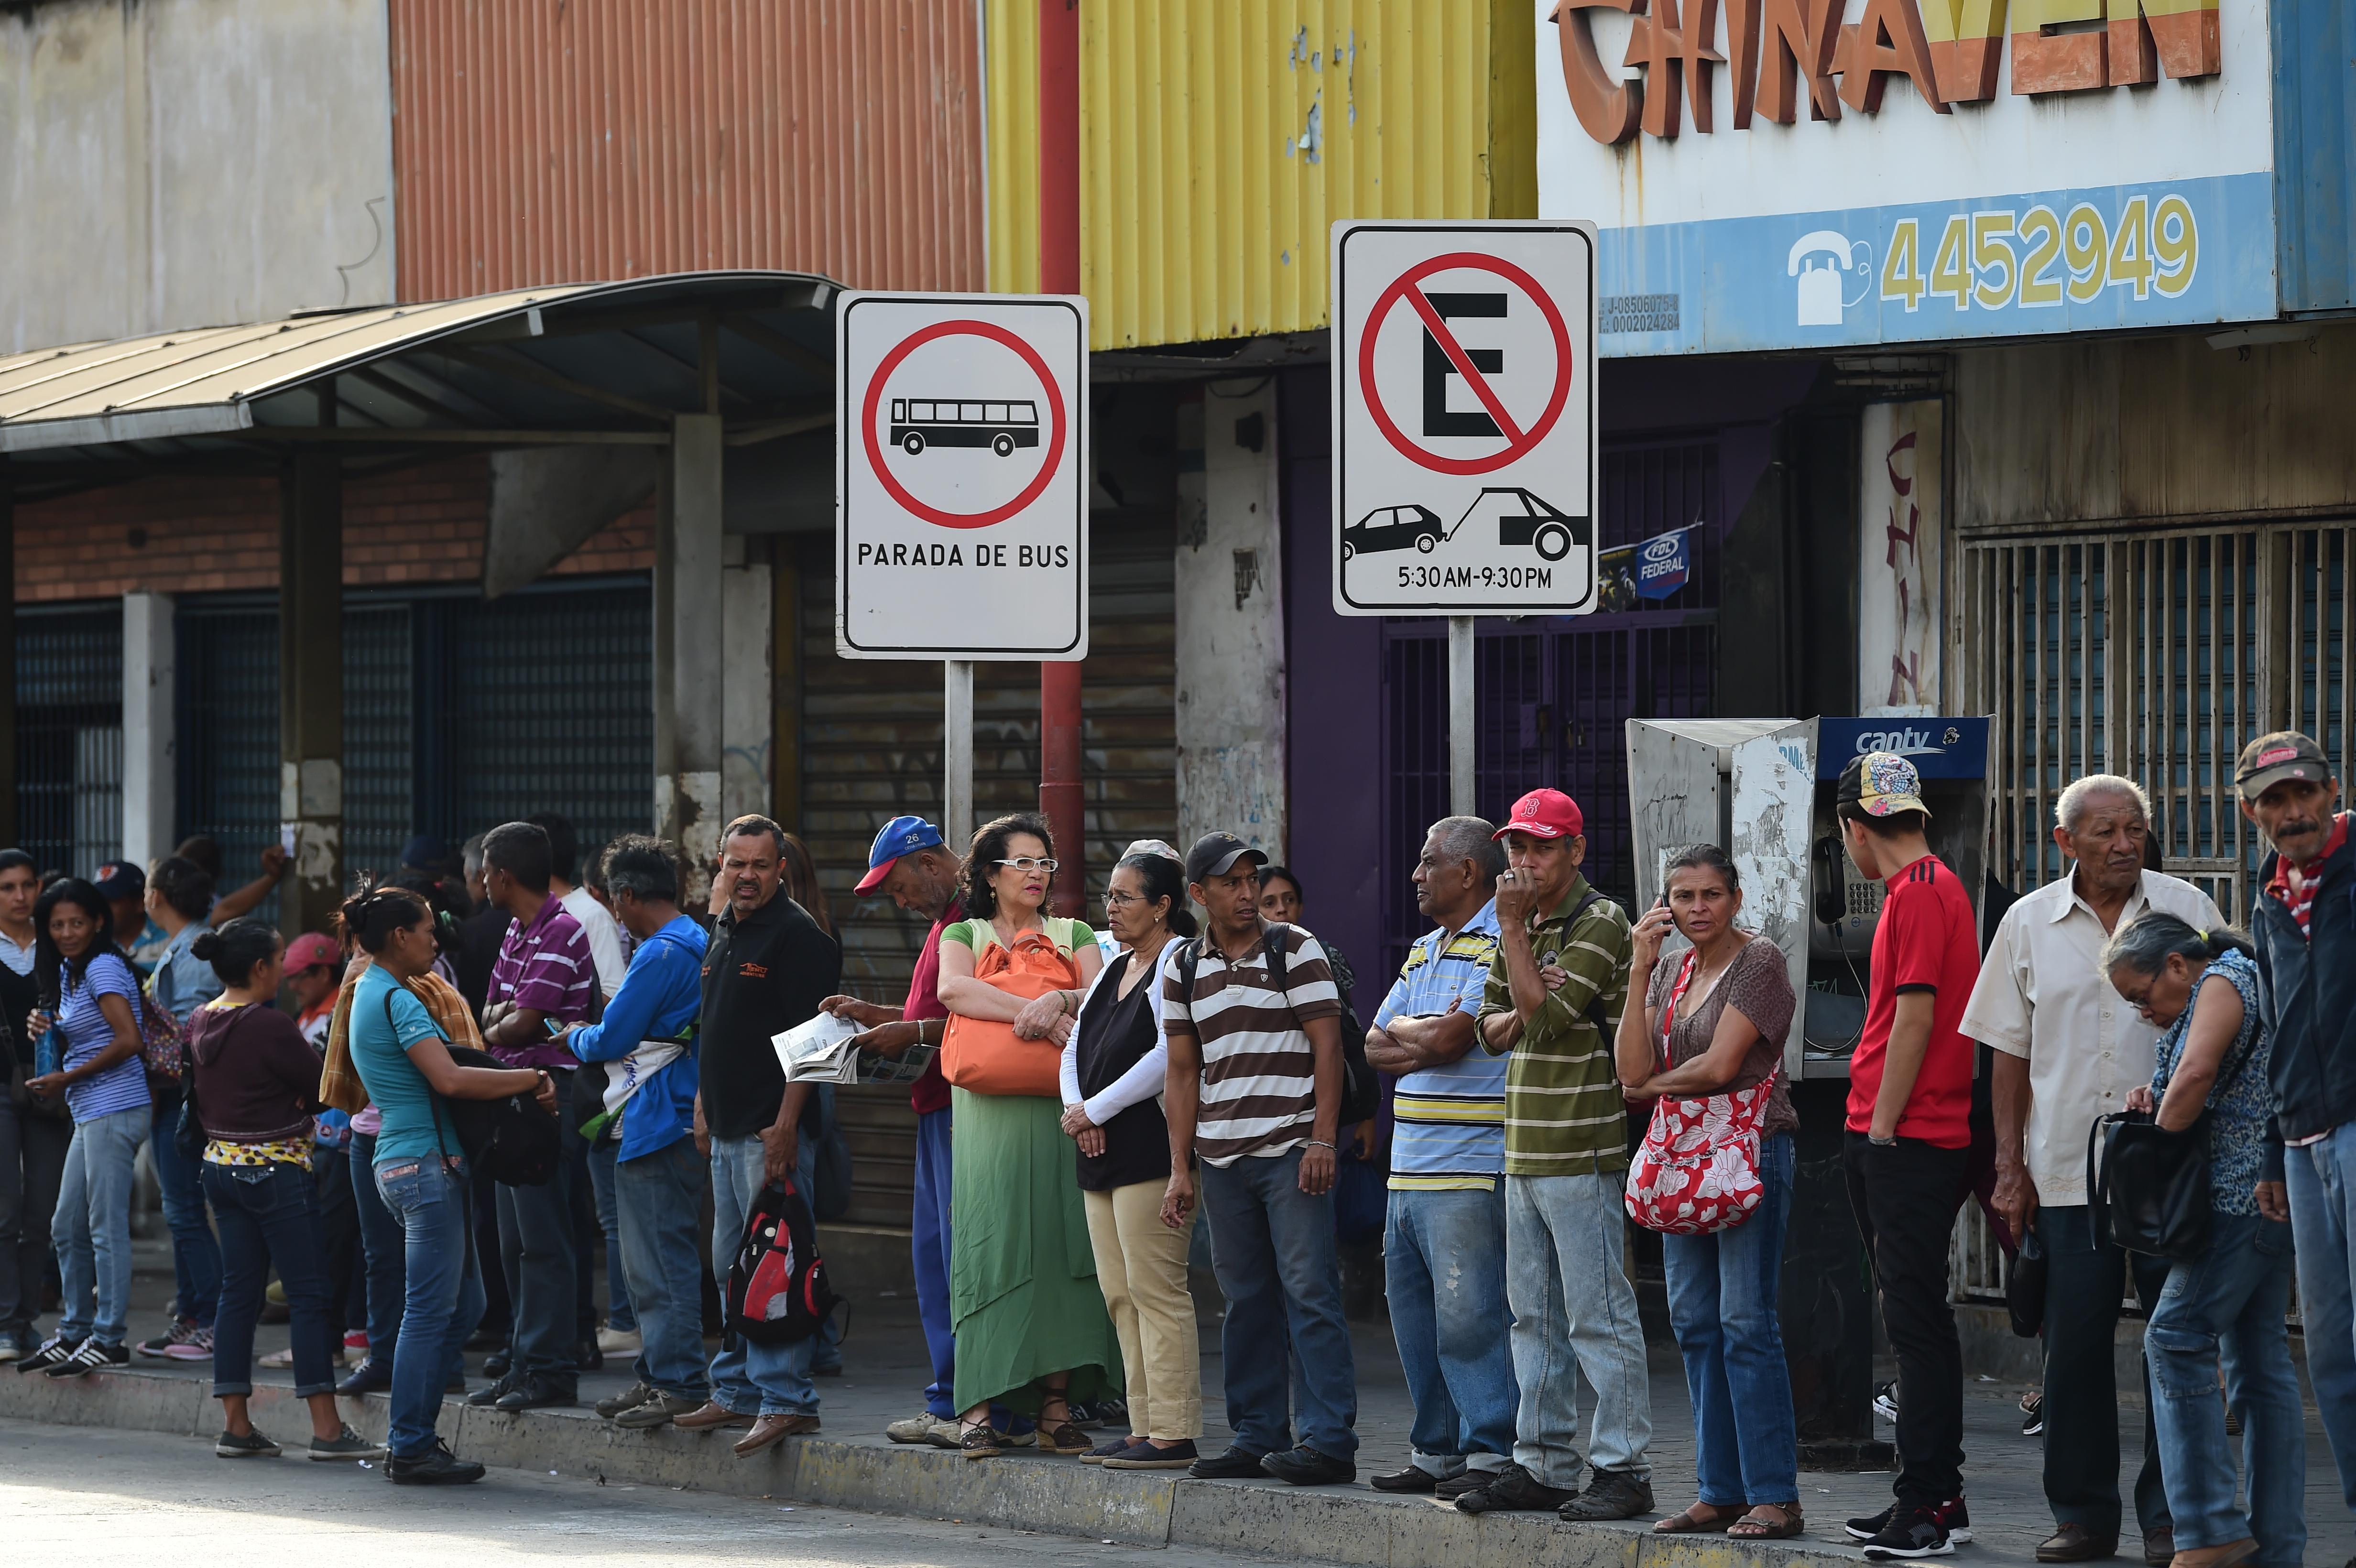 Caos total en Venezuela por apagón que lleva casi 20 horas #8Mar (fotos)